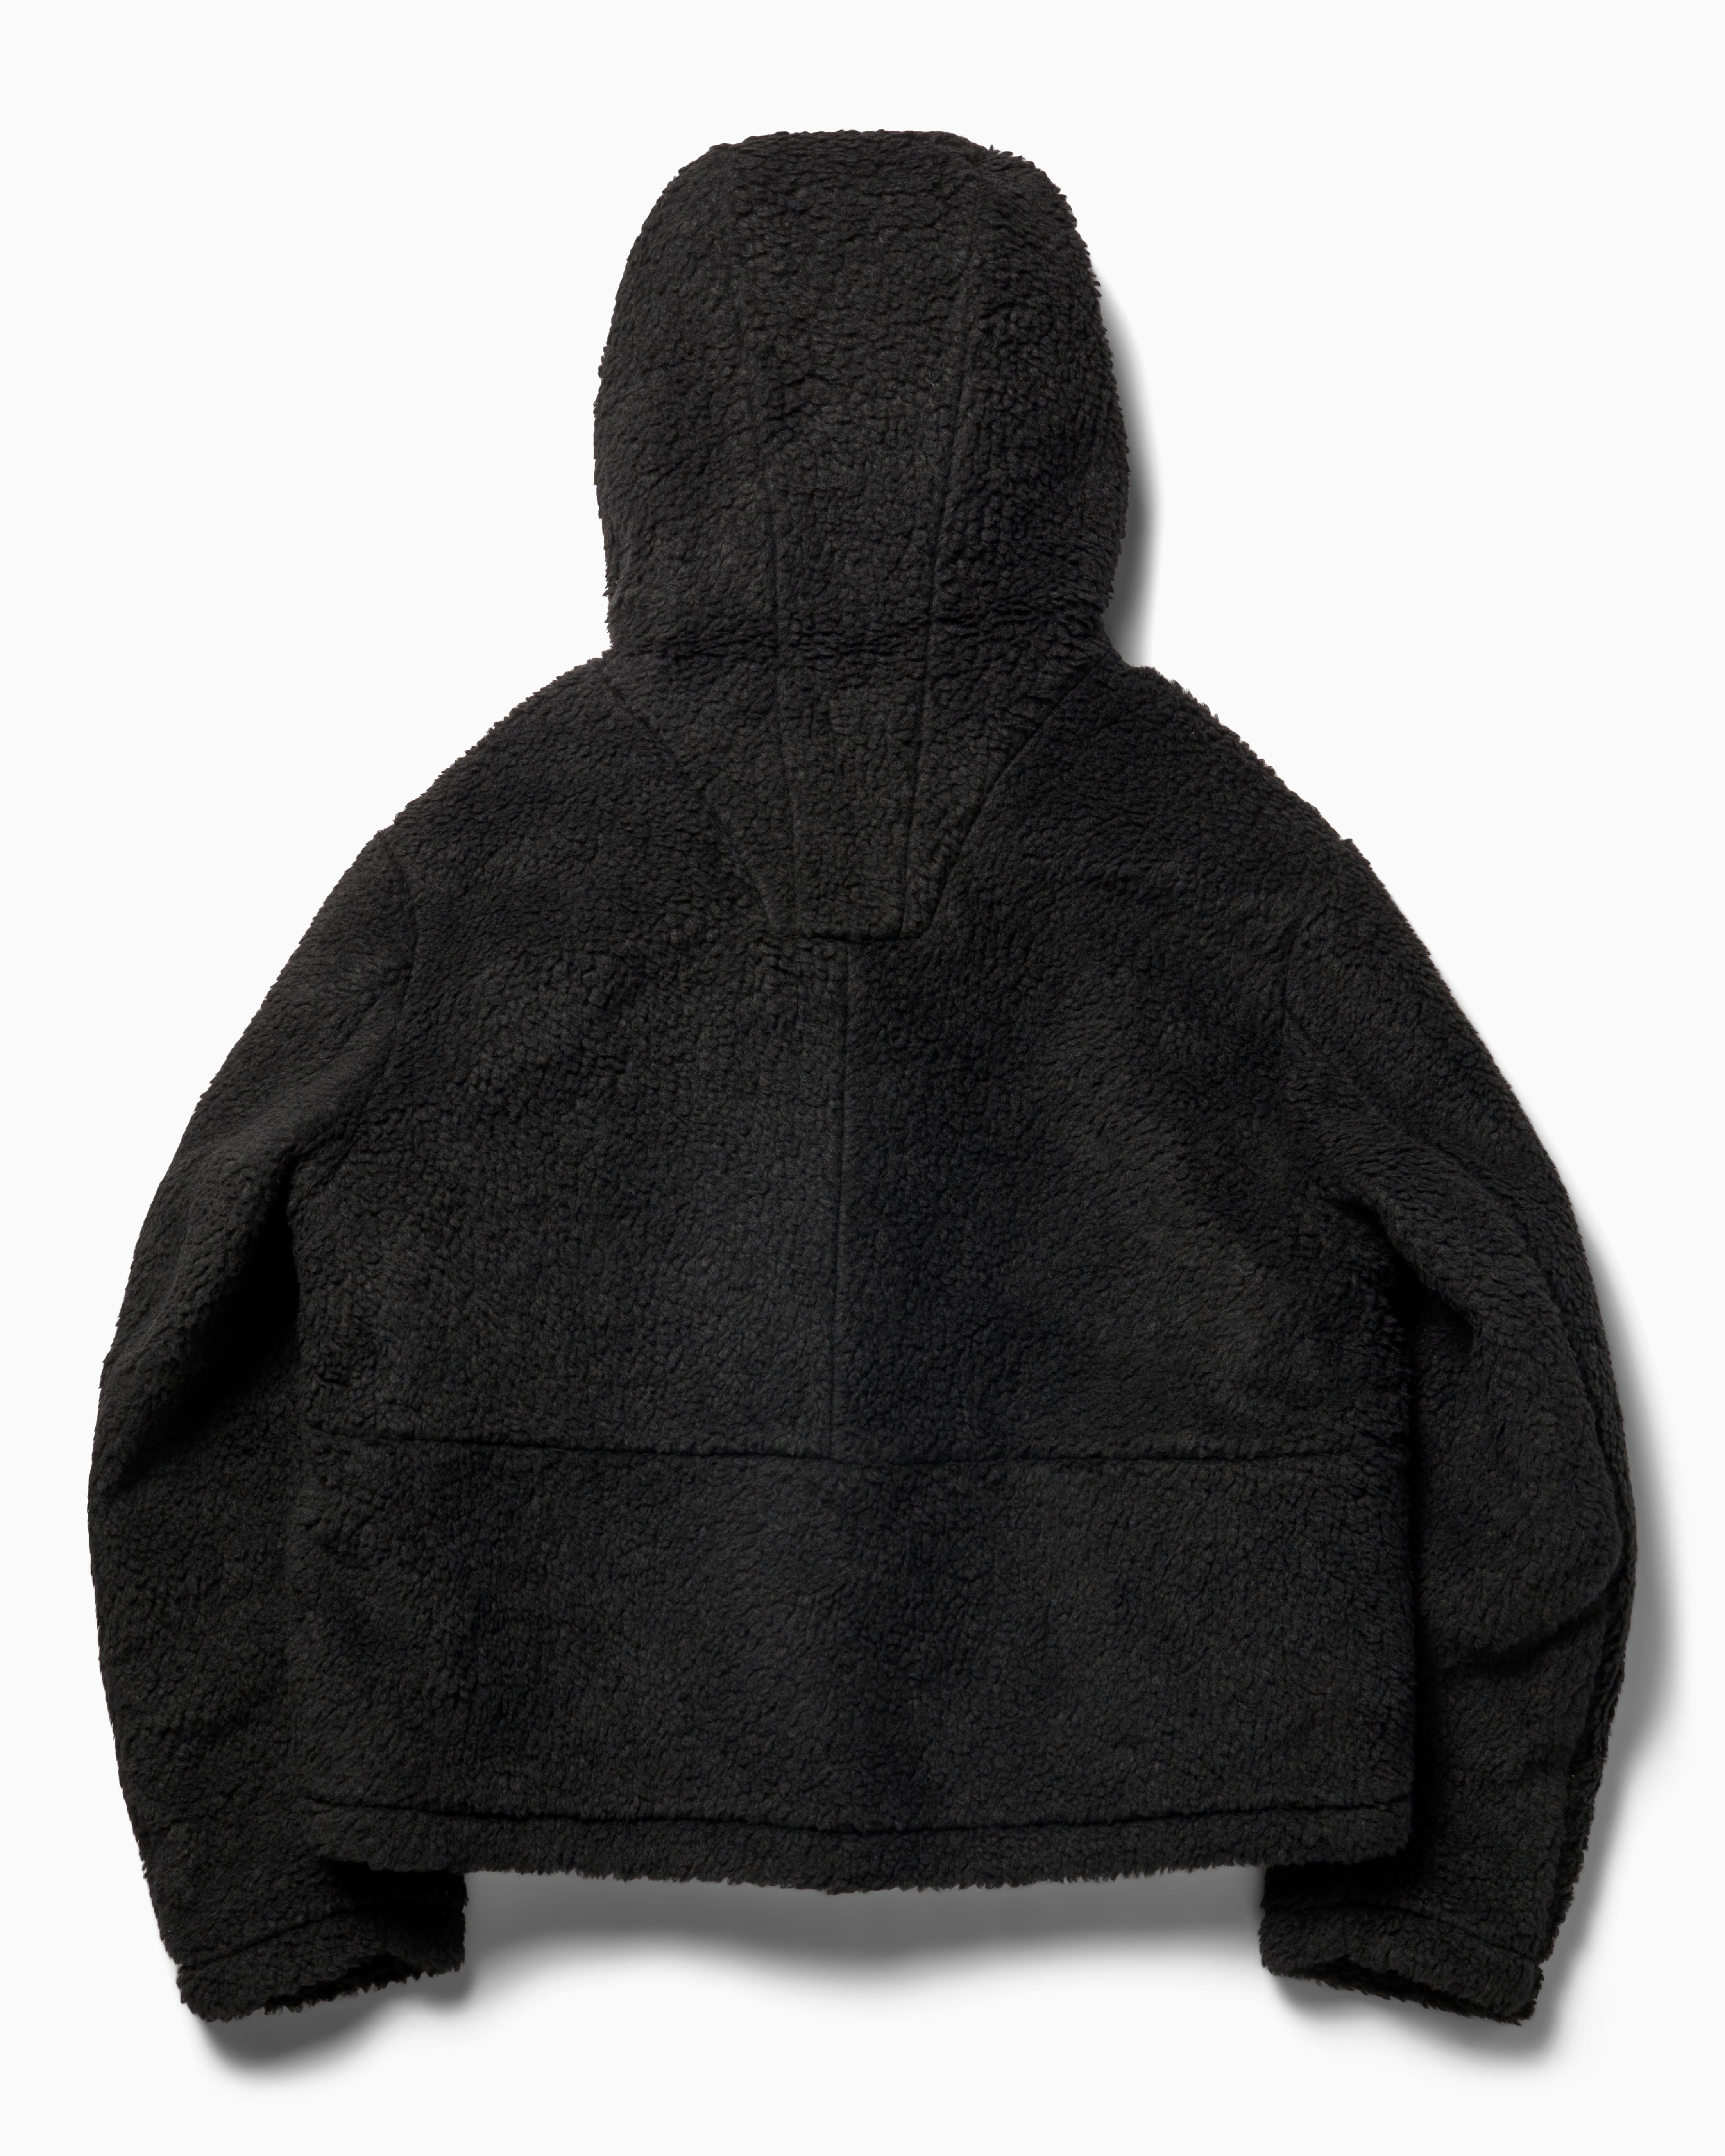 Fleece Hooded Jacket Heron Preston Outerwear Fleece Jackets Black